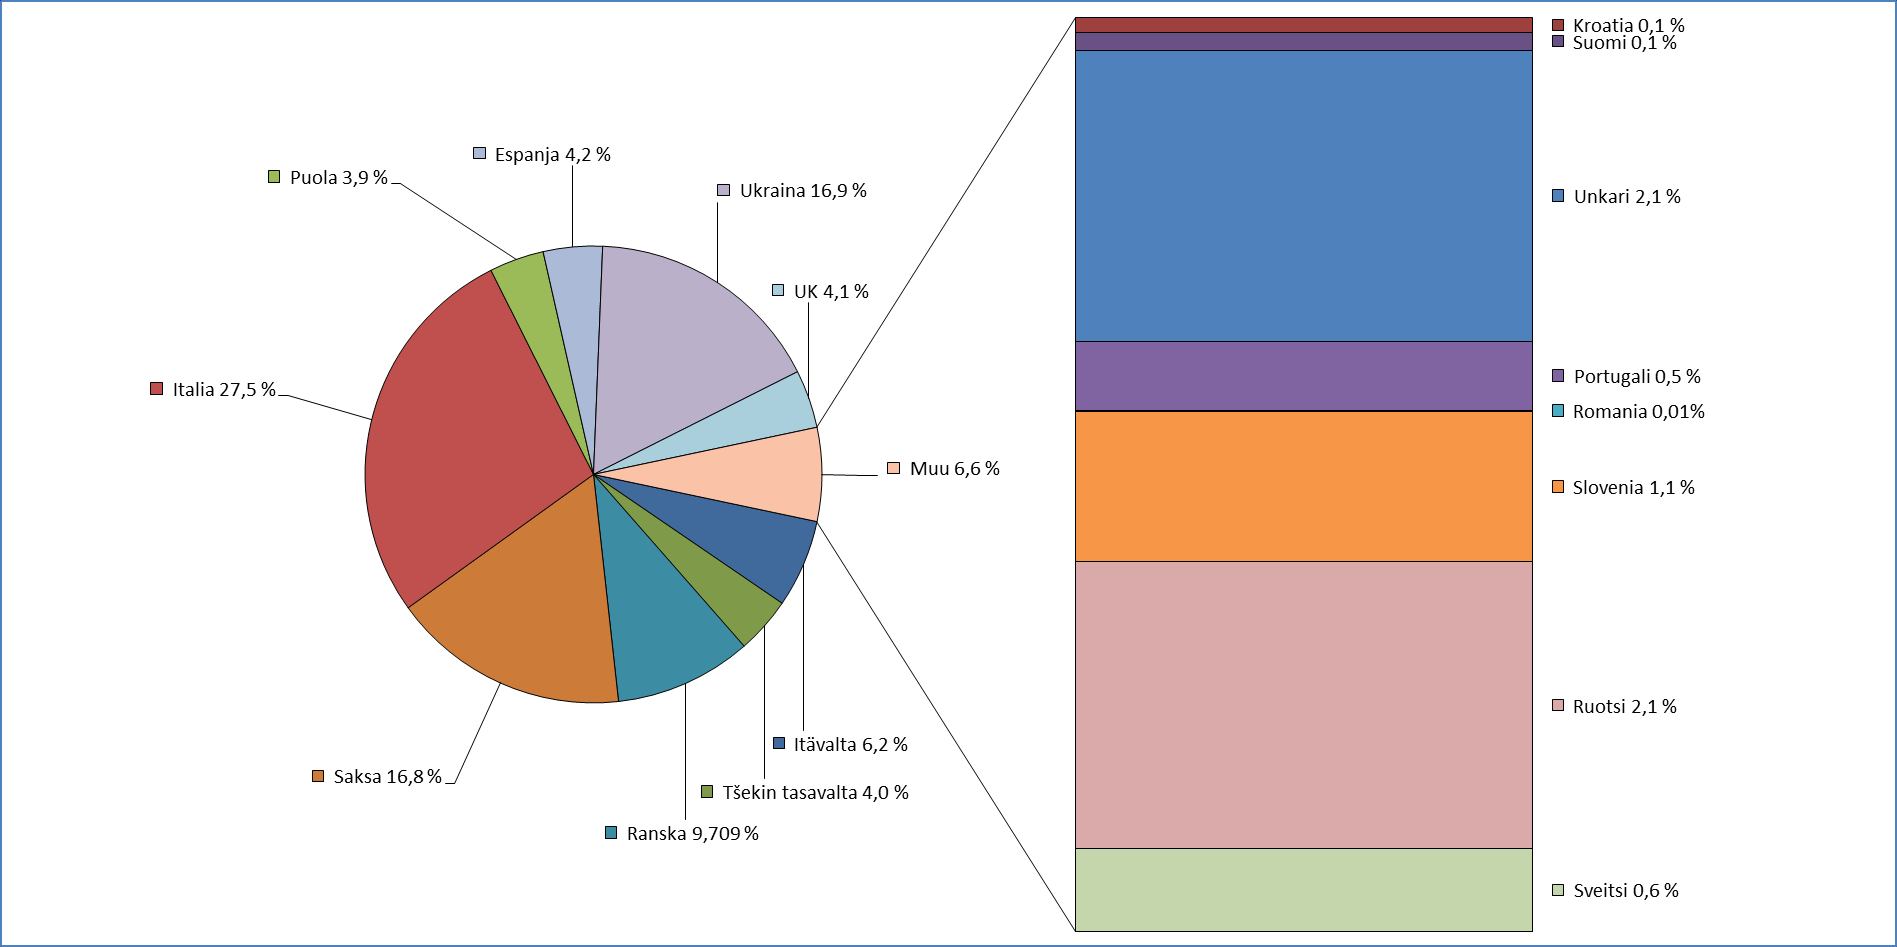 Tilastoidun sinkkiseosvalutuotannon jakautuminen maittain Euroopassa vuonna 2012 Maailman valutuotanto: